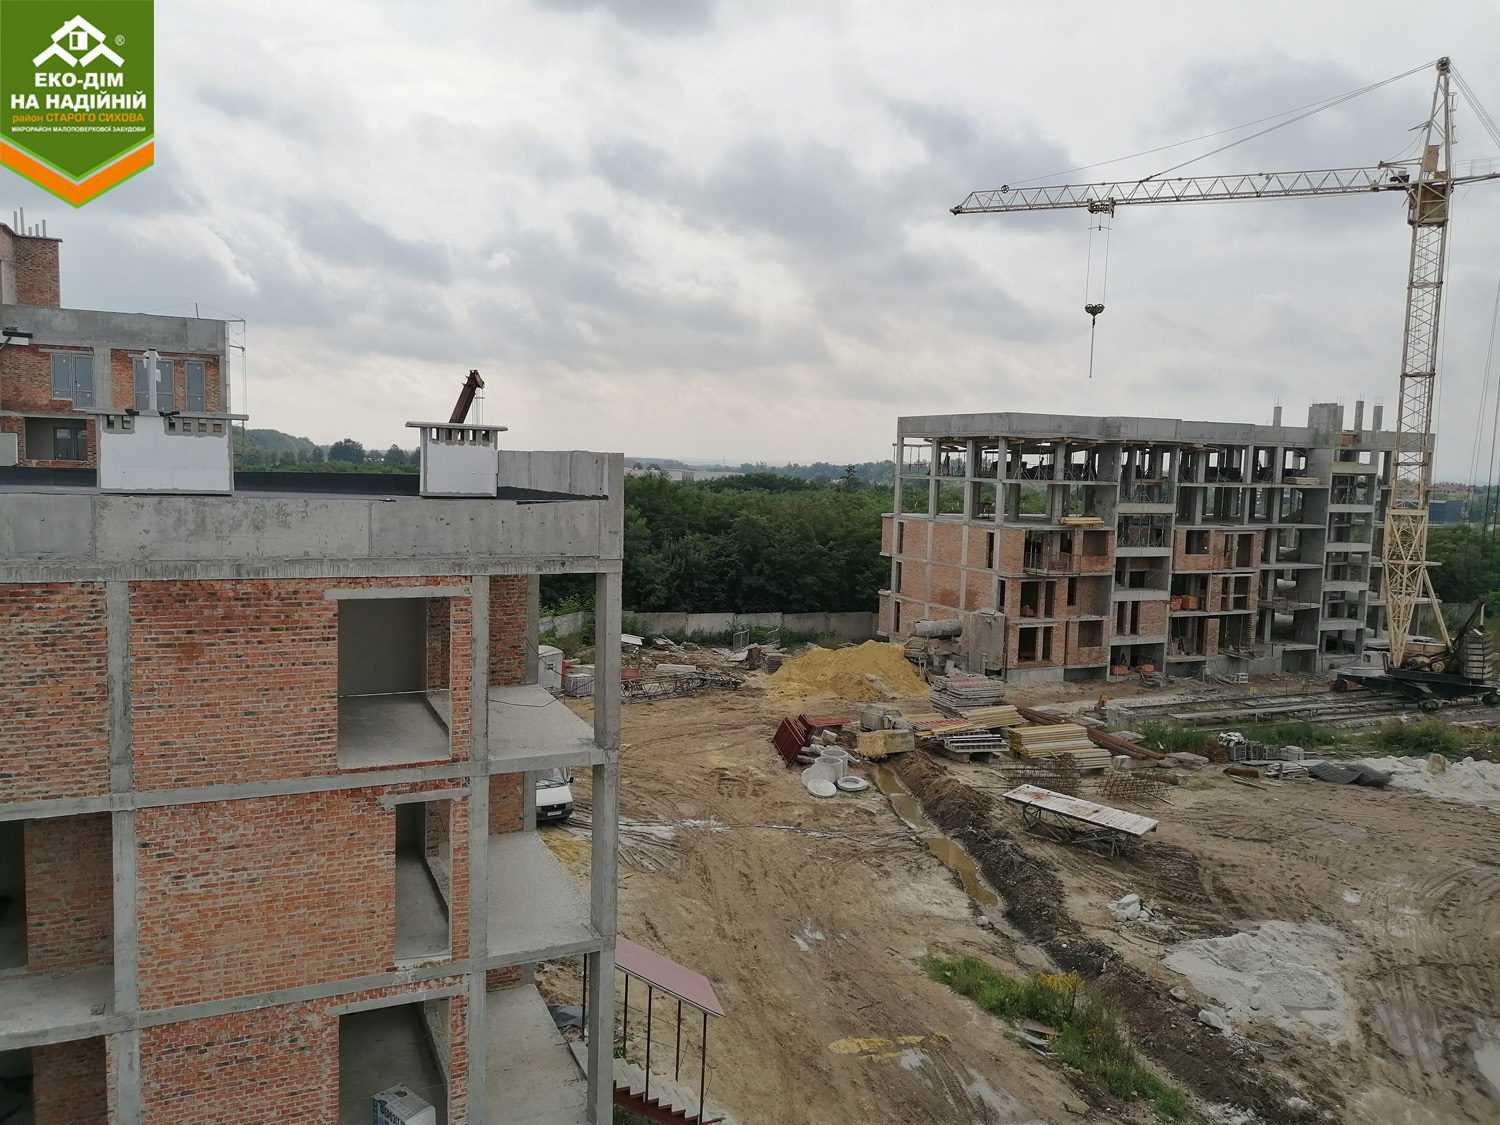 Ход строительства ЖК Эко-дом на Надежной, сен, 2021 год